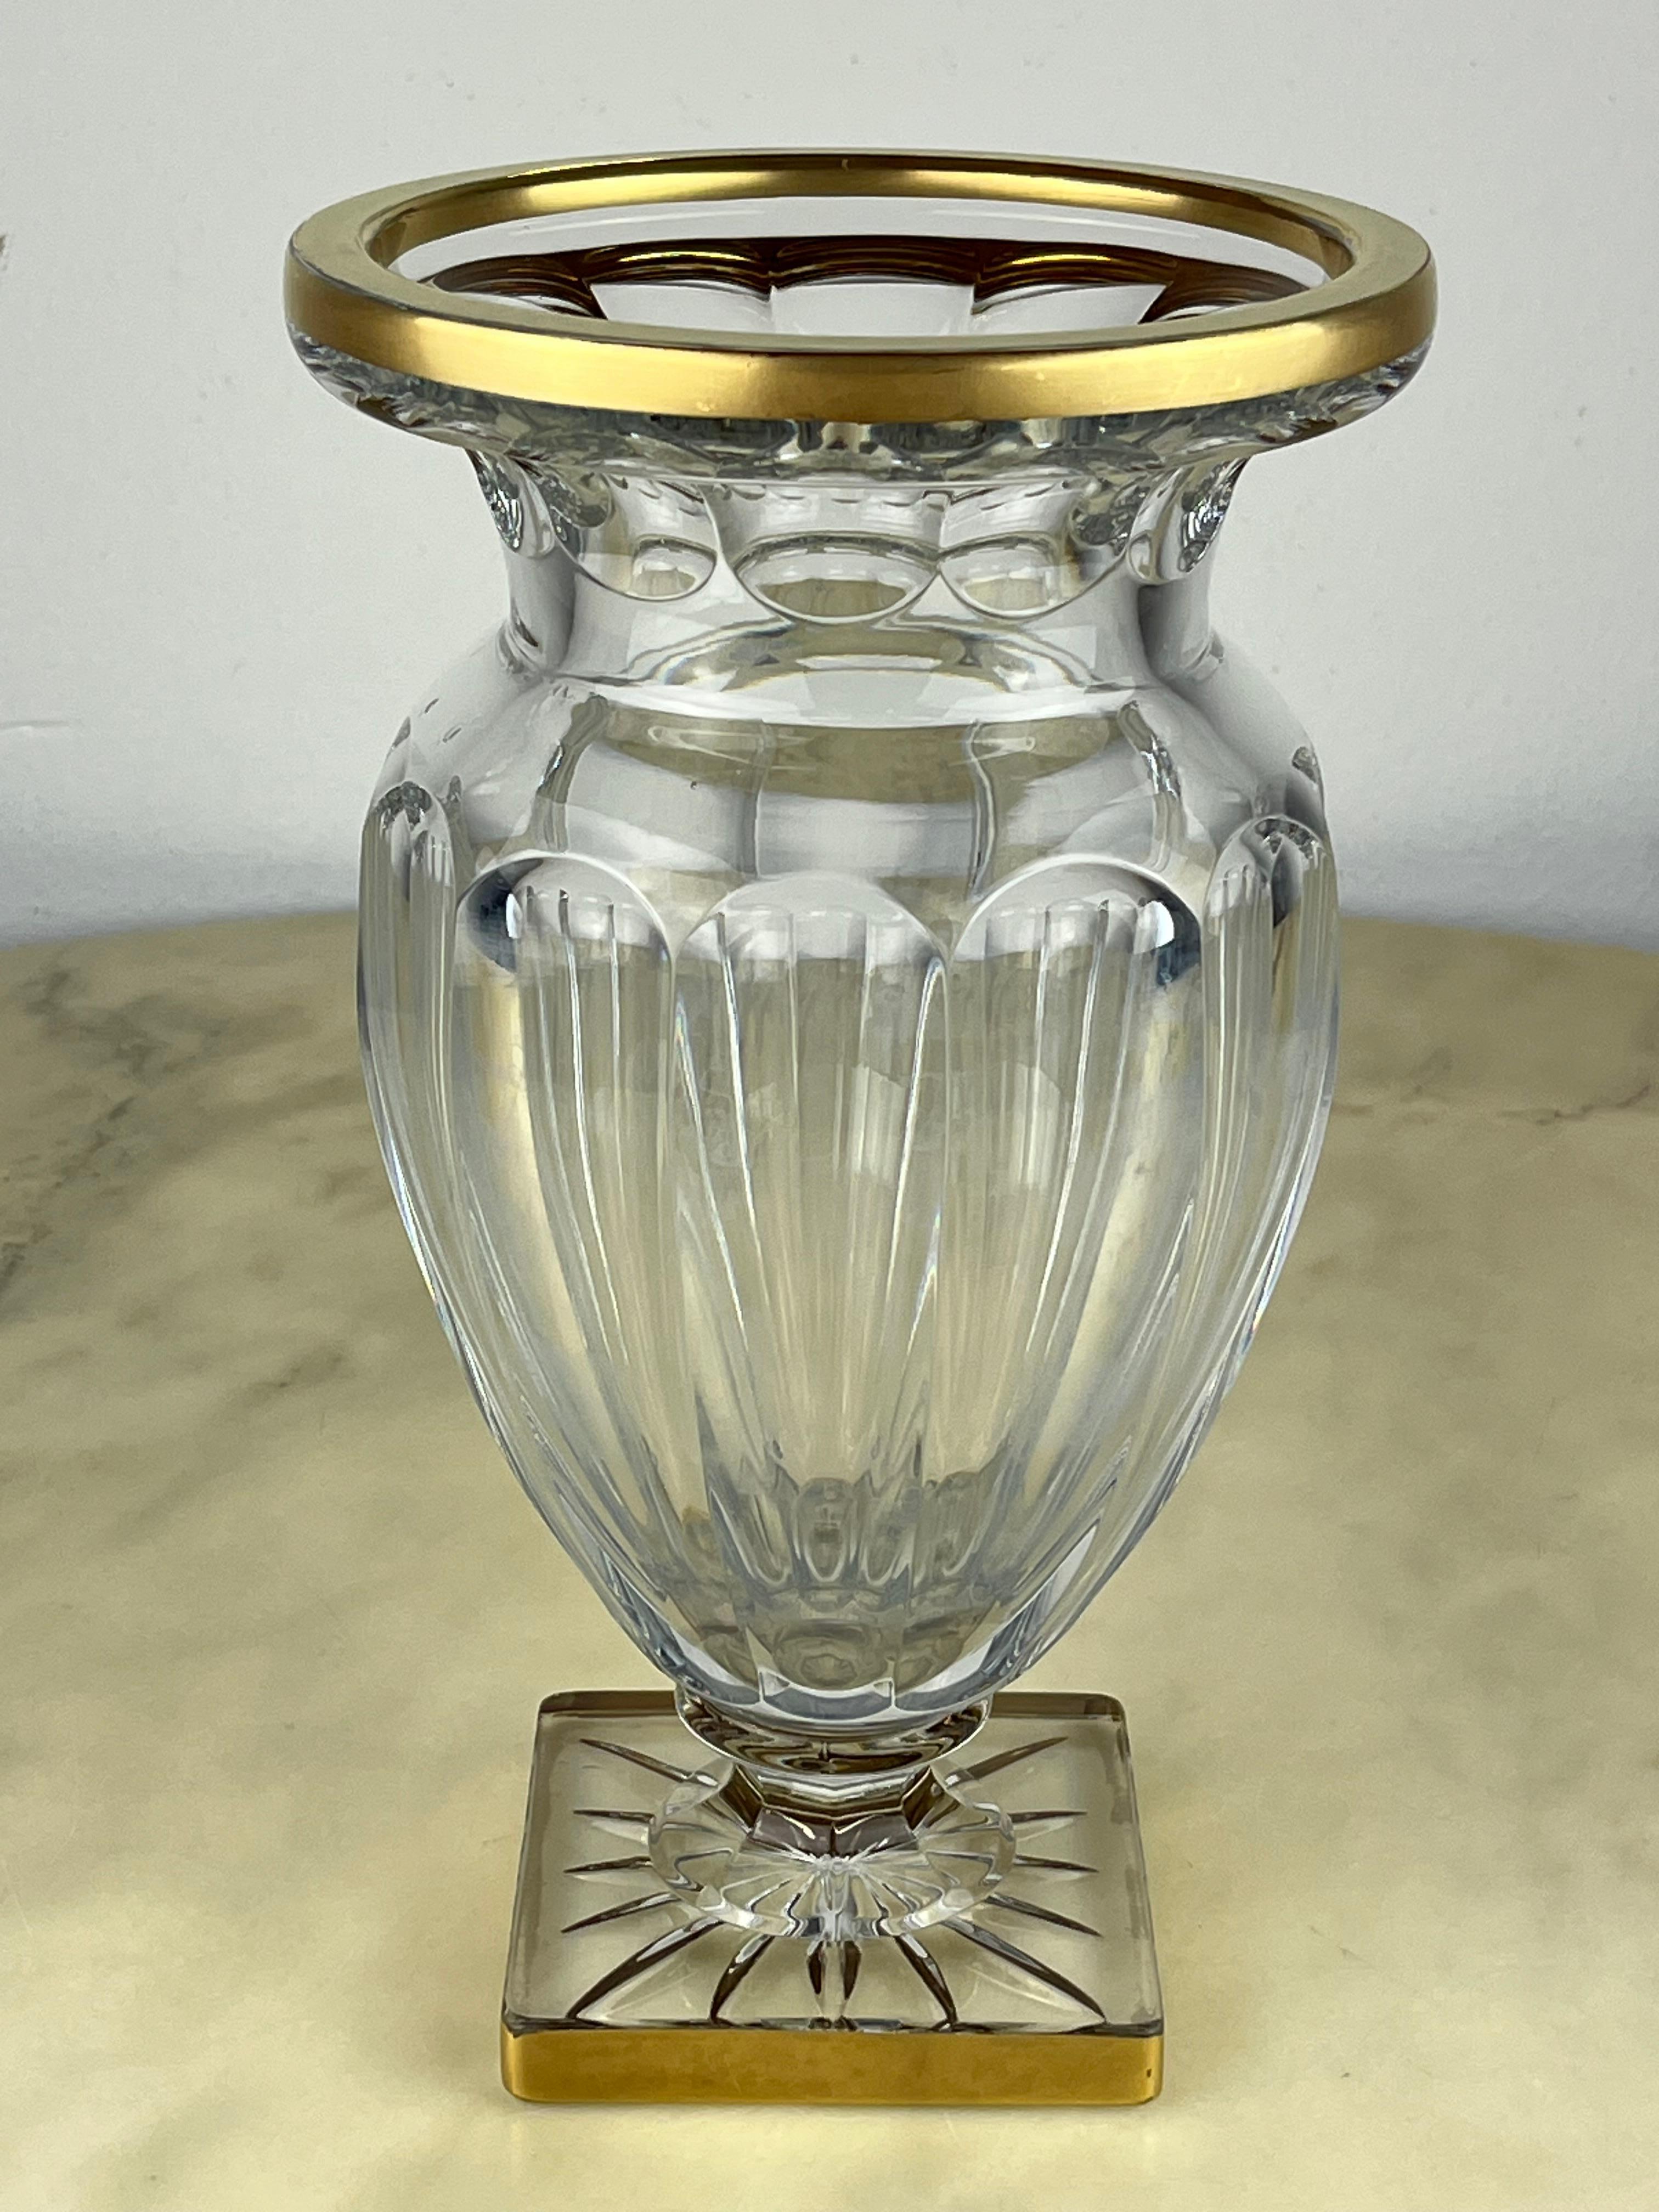 Vase aus Bleikristall, Frankreich, 1980er Jahre
Es ist intakt und weist an den Rändern Verzierungen aus reinem Gold auf, die kleine Fehler aufweisen.
Es ist sehr schön und elegant.
Wenn Sie sich die Beschreibungsfotos ansehen, werden Sie kleine